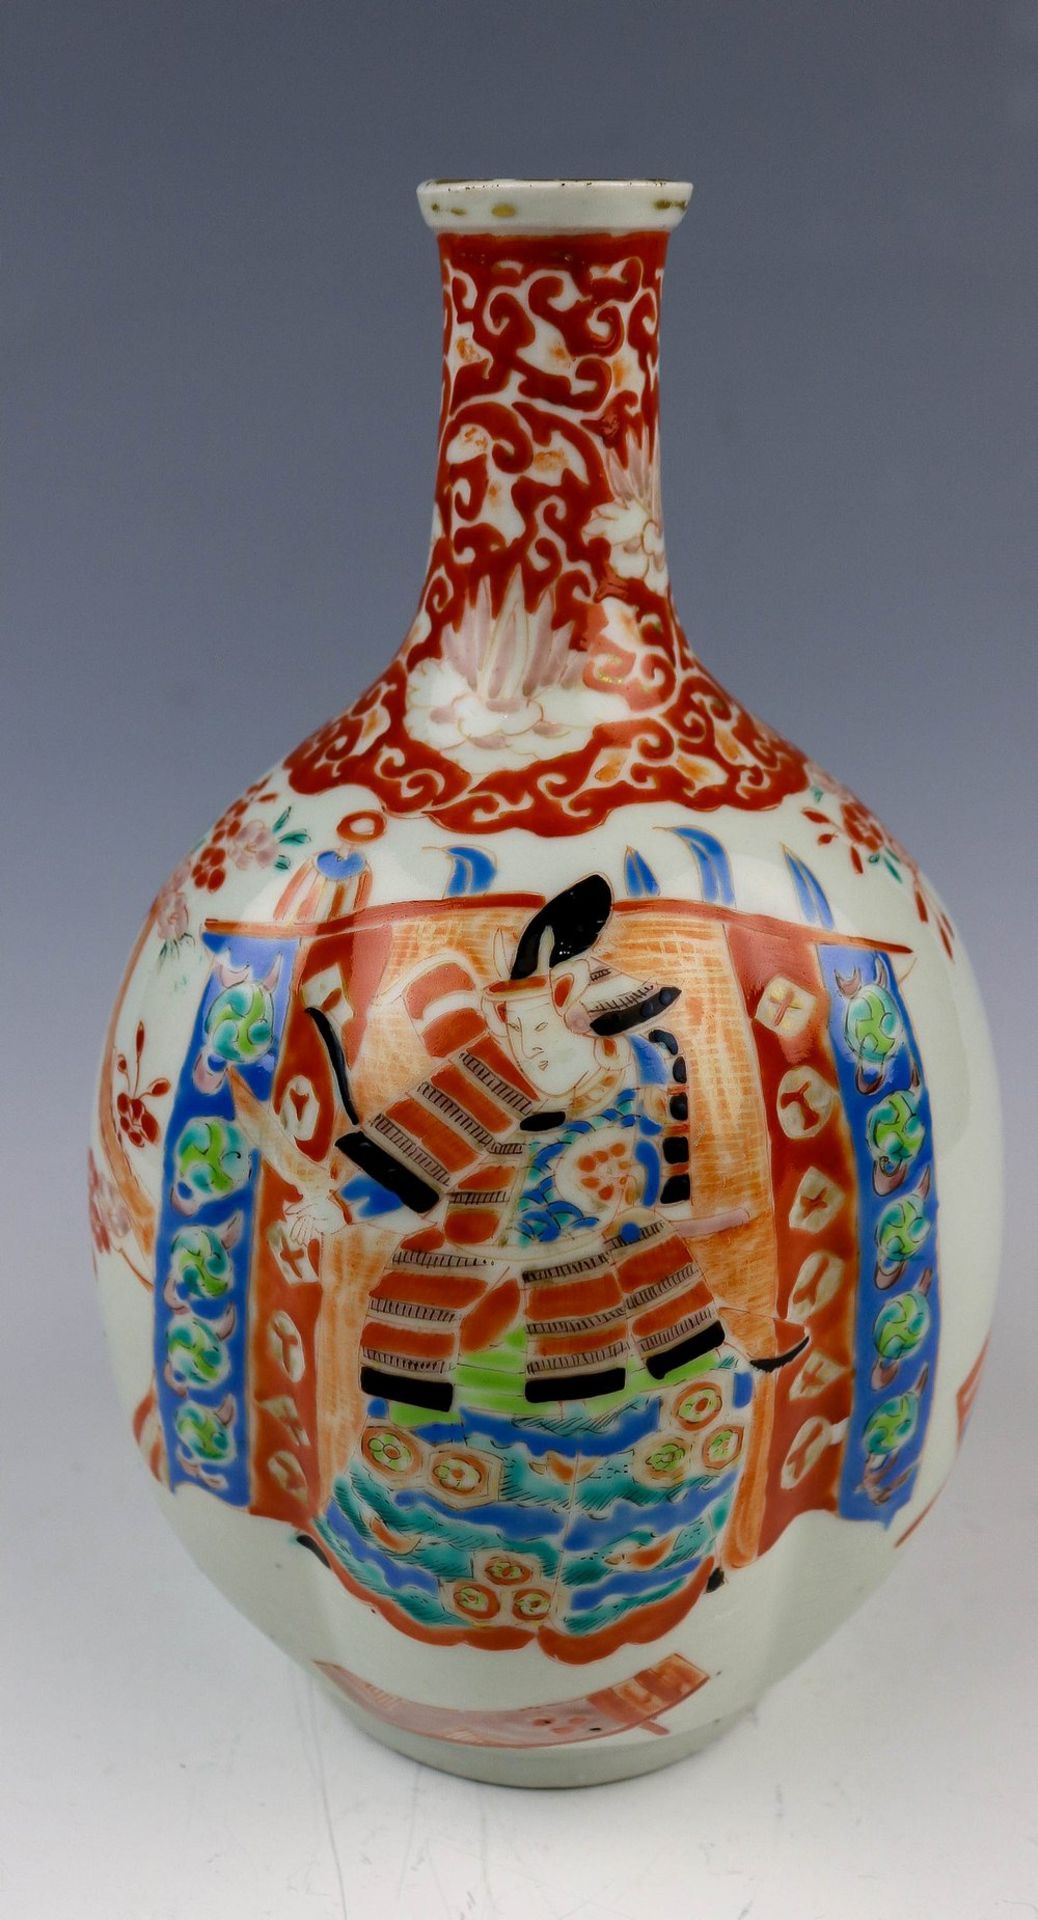 Bauchige Vase mit gerillter Wandung Japan - Image 2 of 3